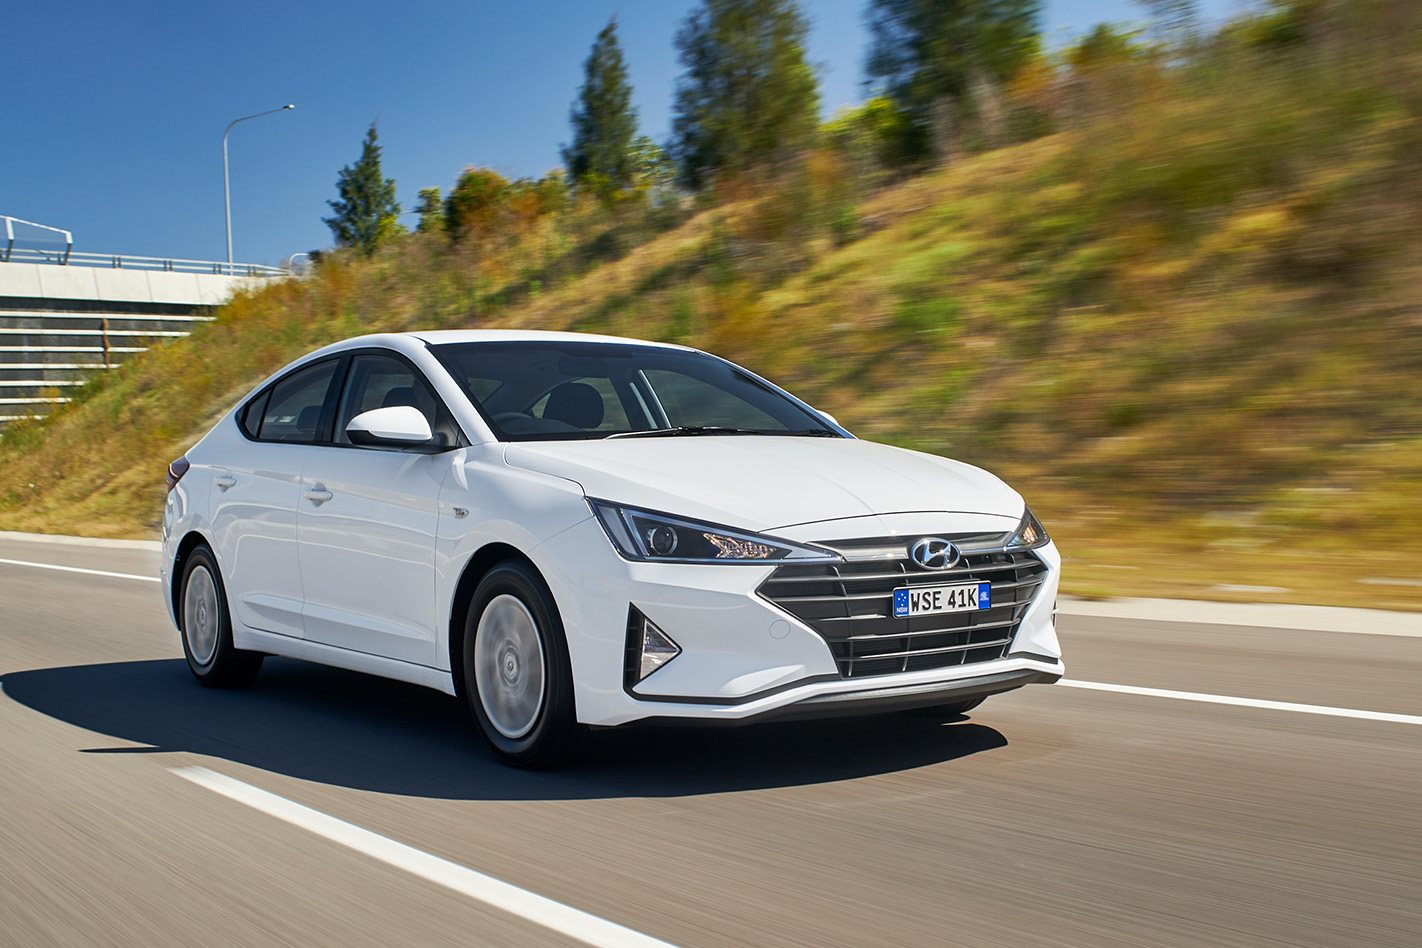 2019 Hyundai Elantra Go automatic quick review